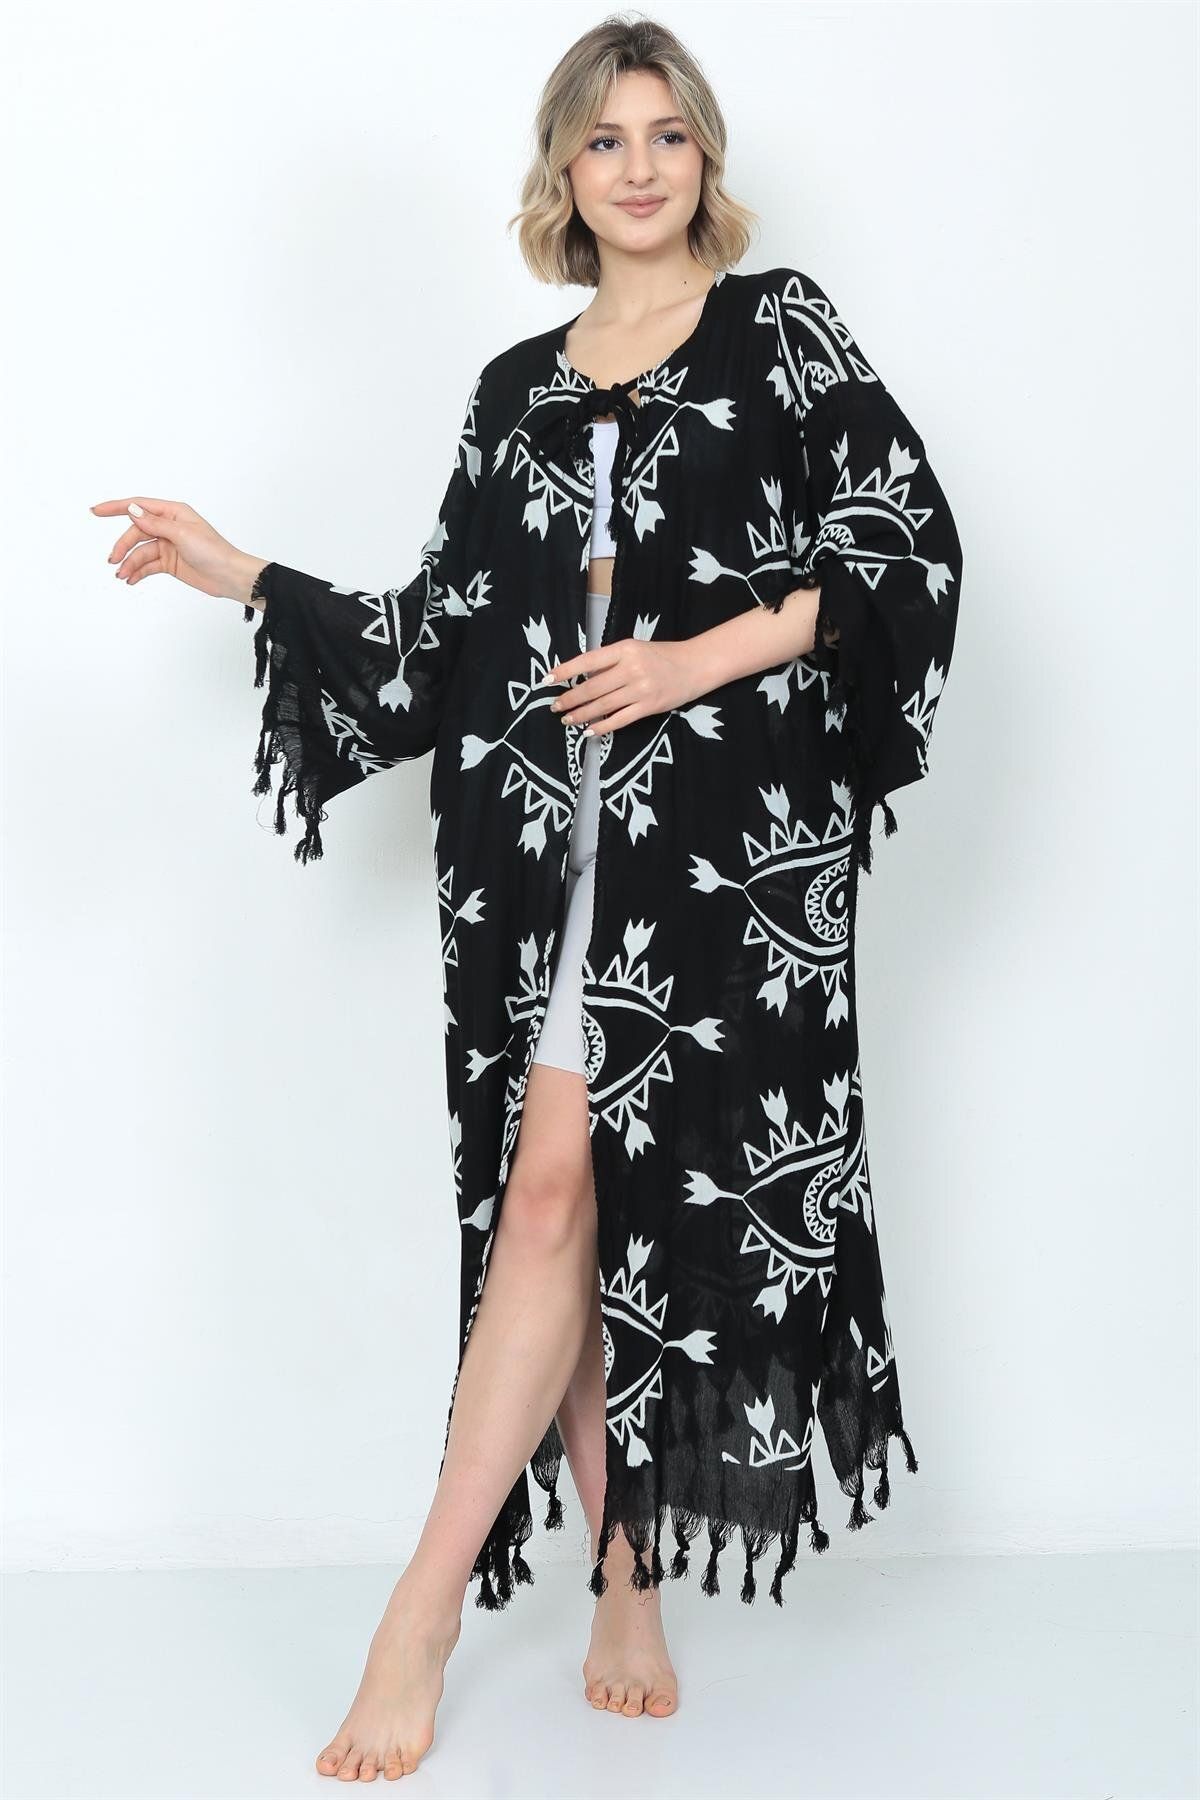 Arden Siyah Kaftan Pareo, Göz Desen Keten Pamuk Karışım Bikini & Mayo Üstü Plaj Elbisesi, Festival Kimono